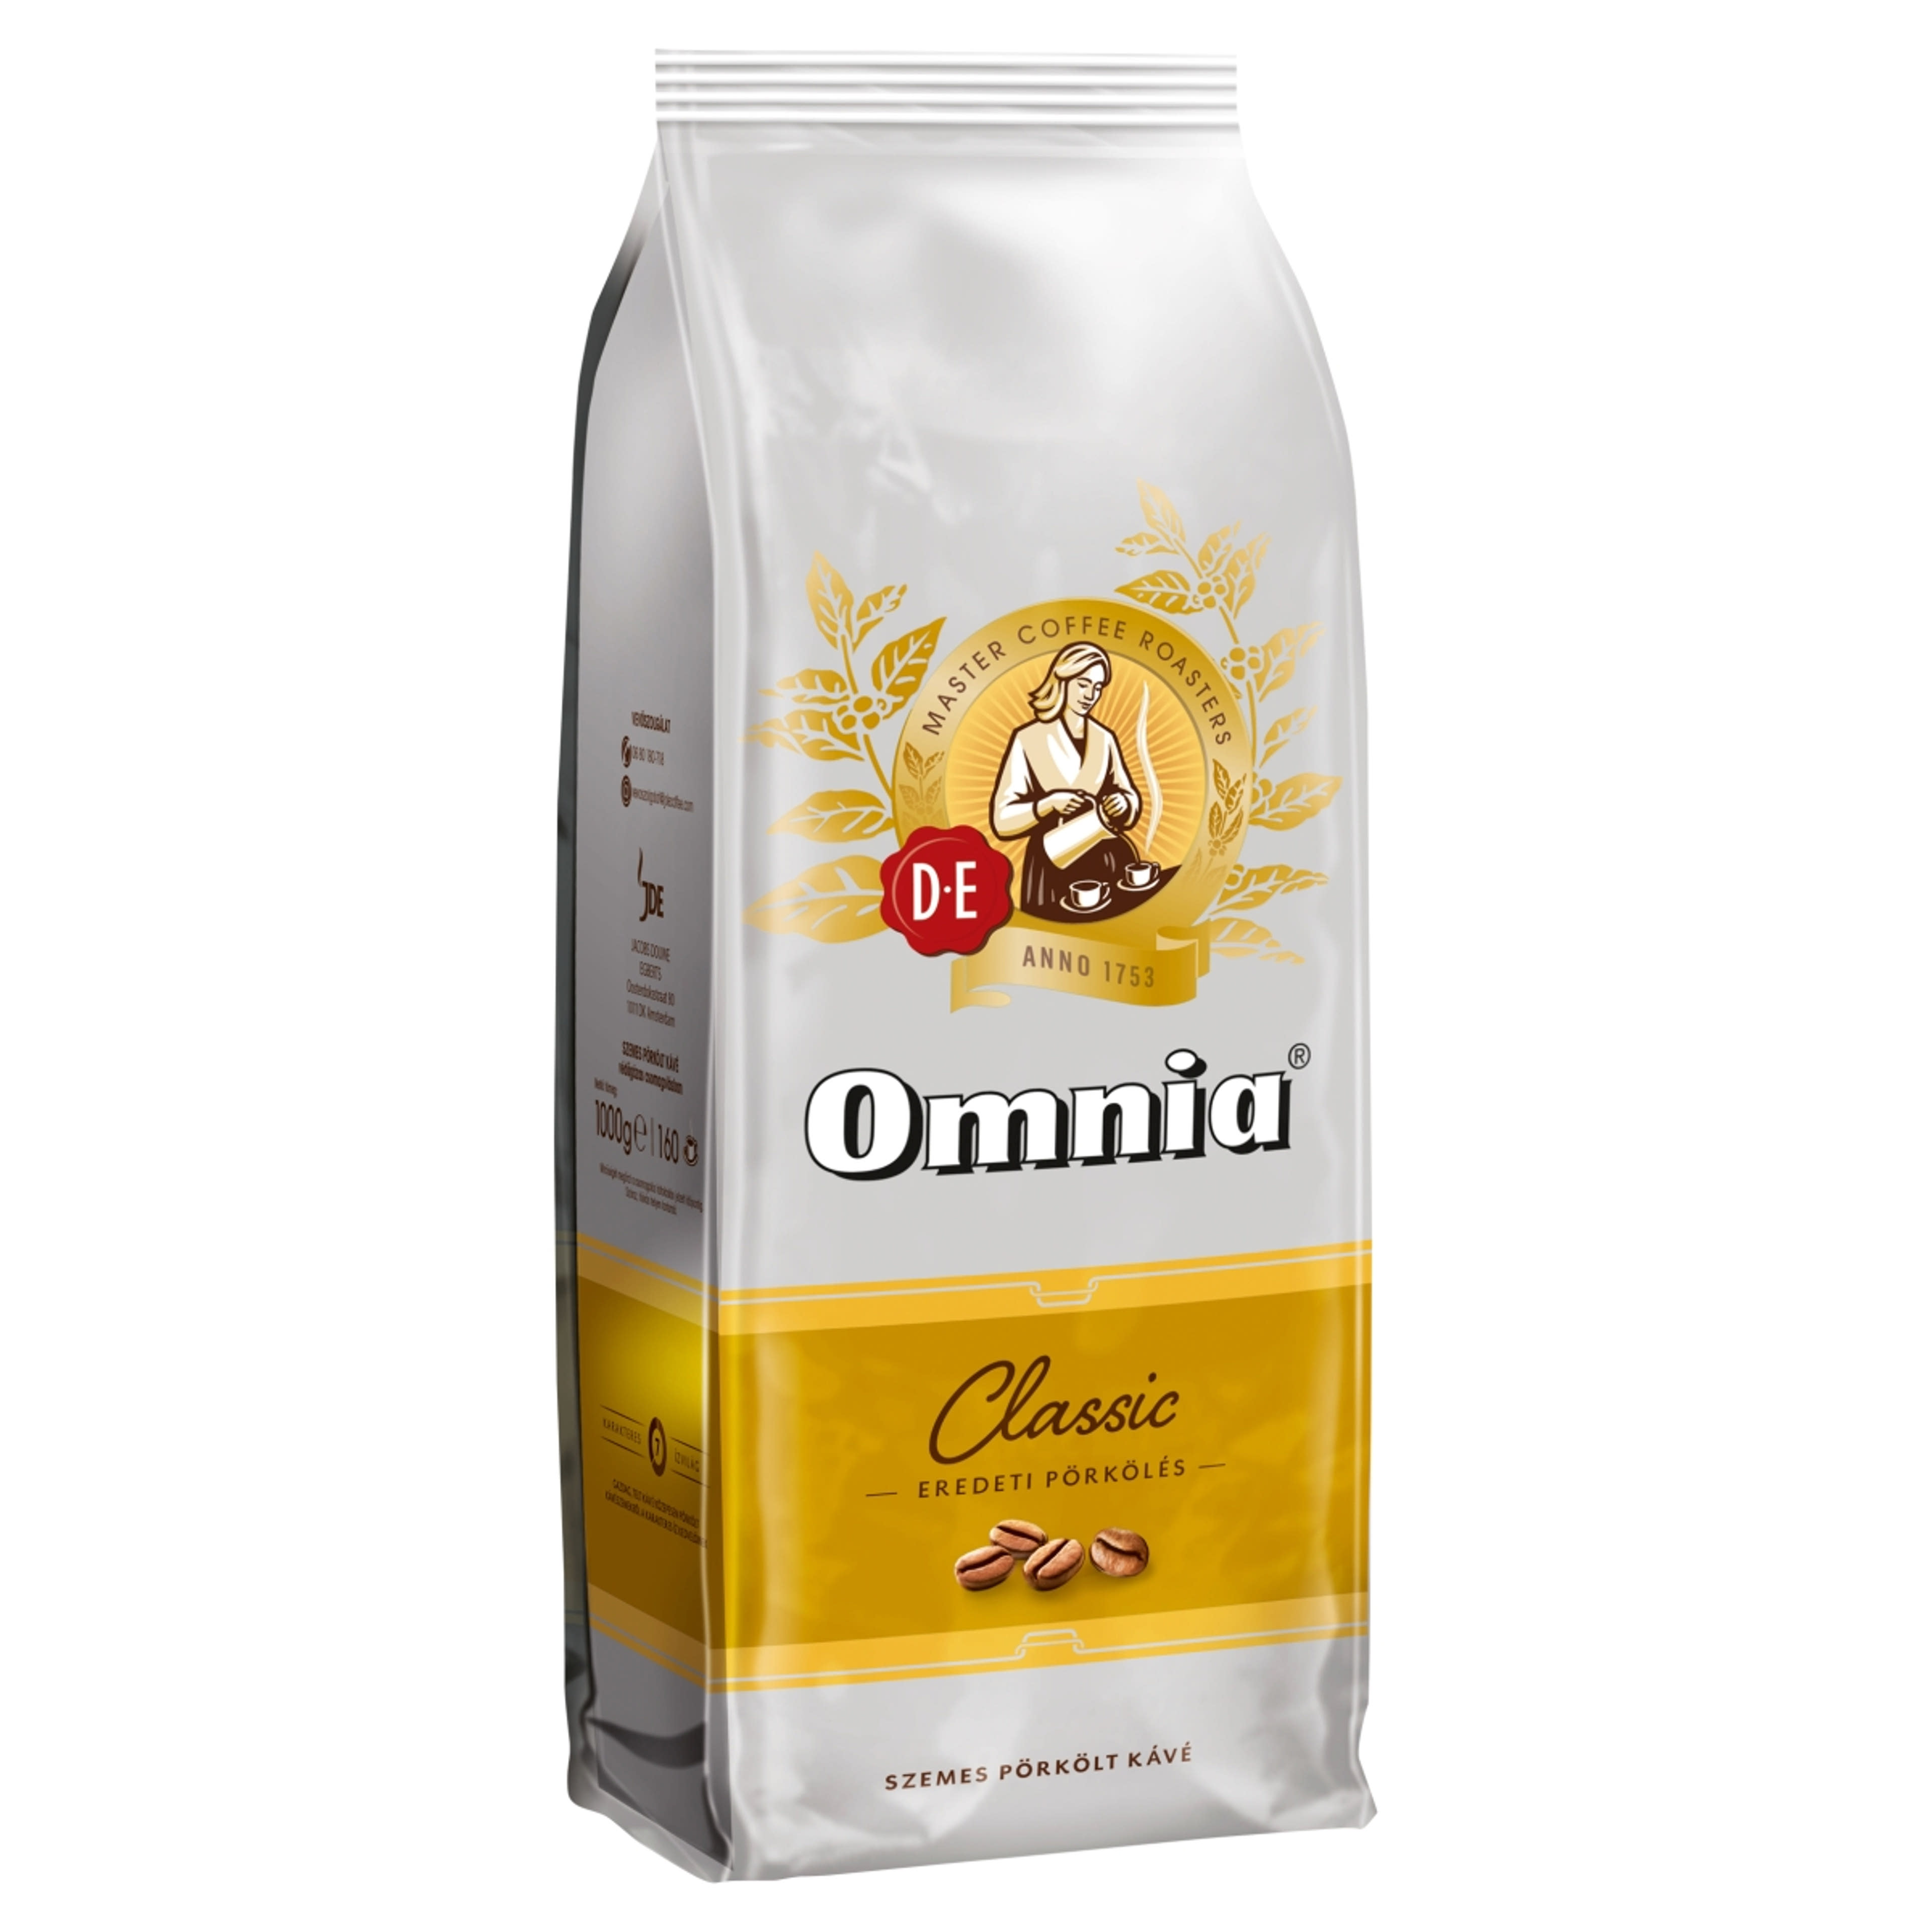 Douwe Egberts Omnia Classic eredeti pörkölésű szemes pörkölt kávé - 1000 g-2